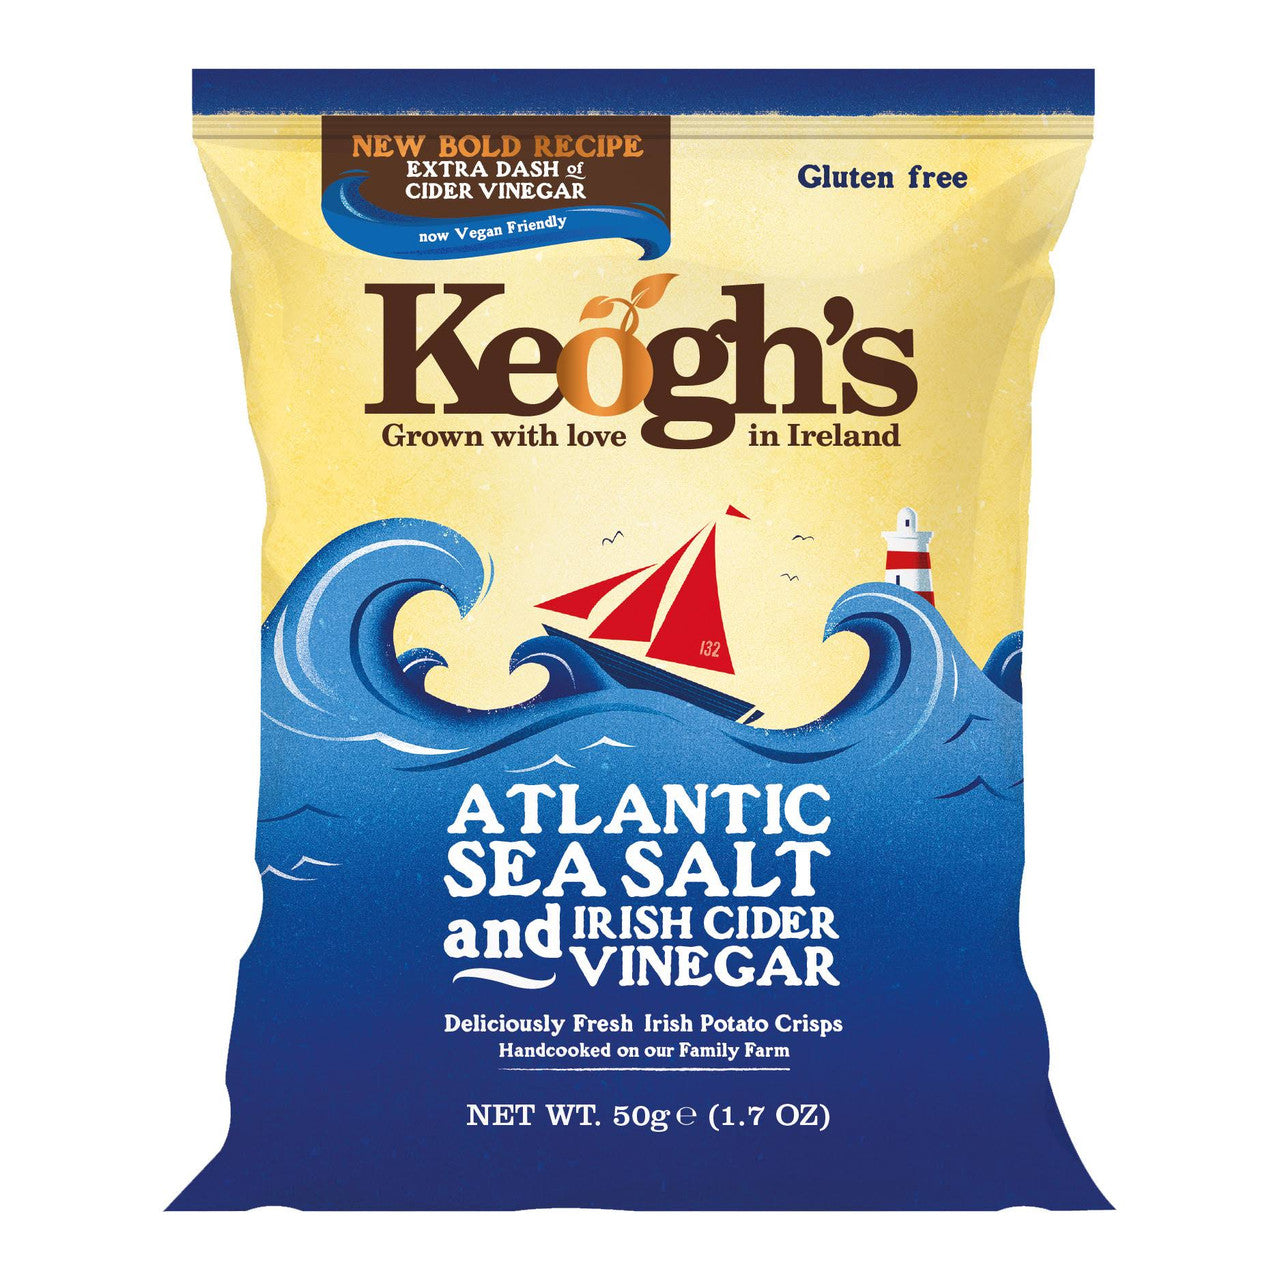 Keogh's Atlantic Sea Salt and Sweet Irish Vinegar.